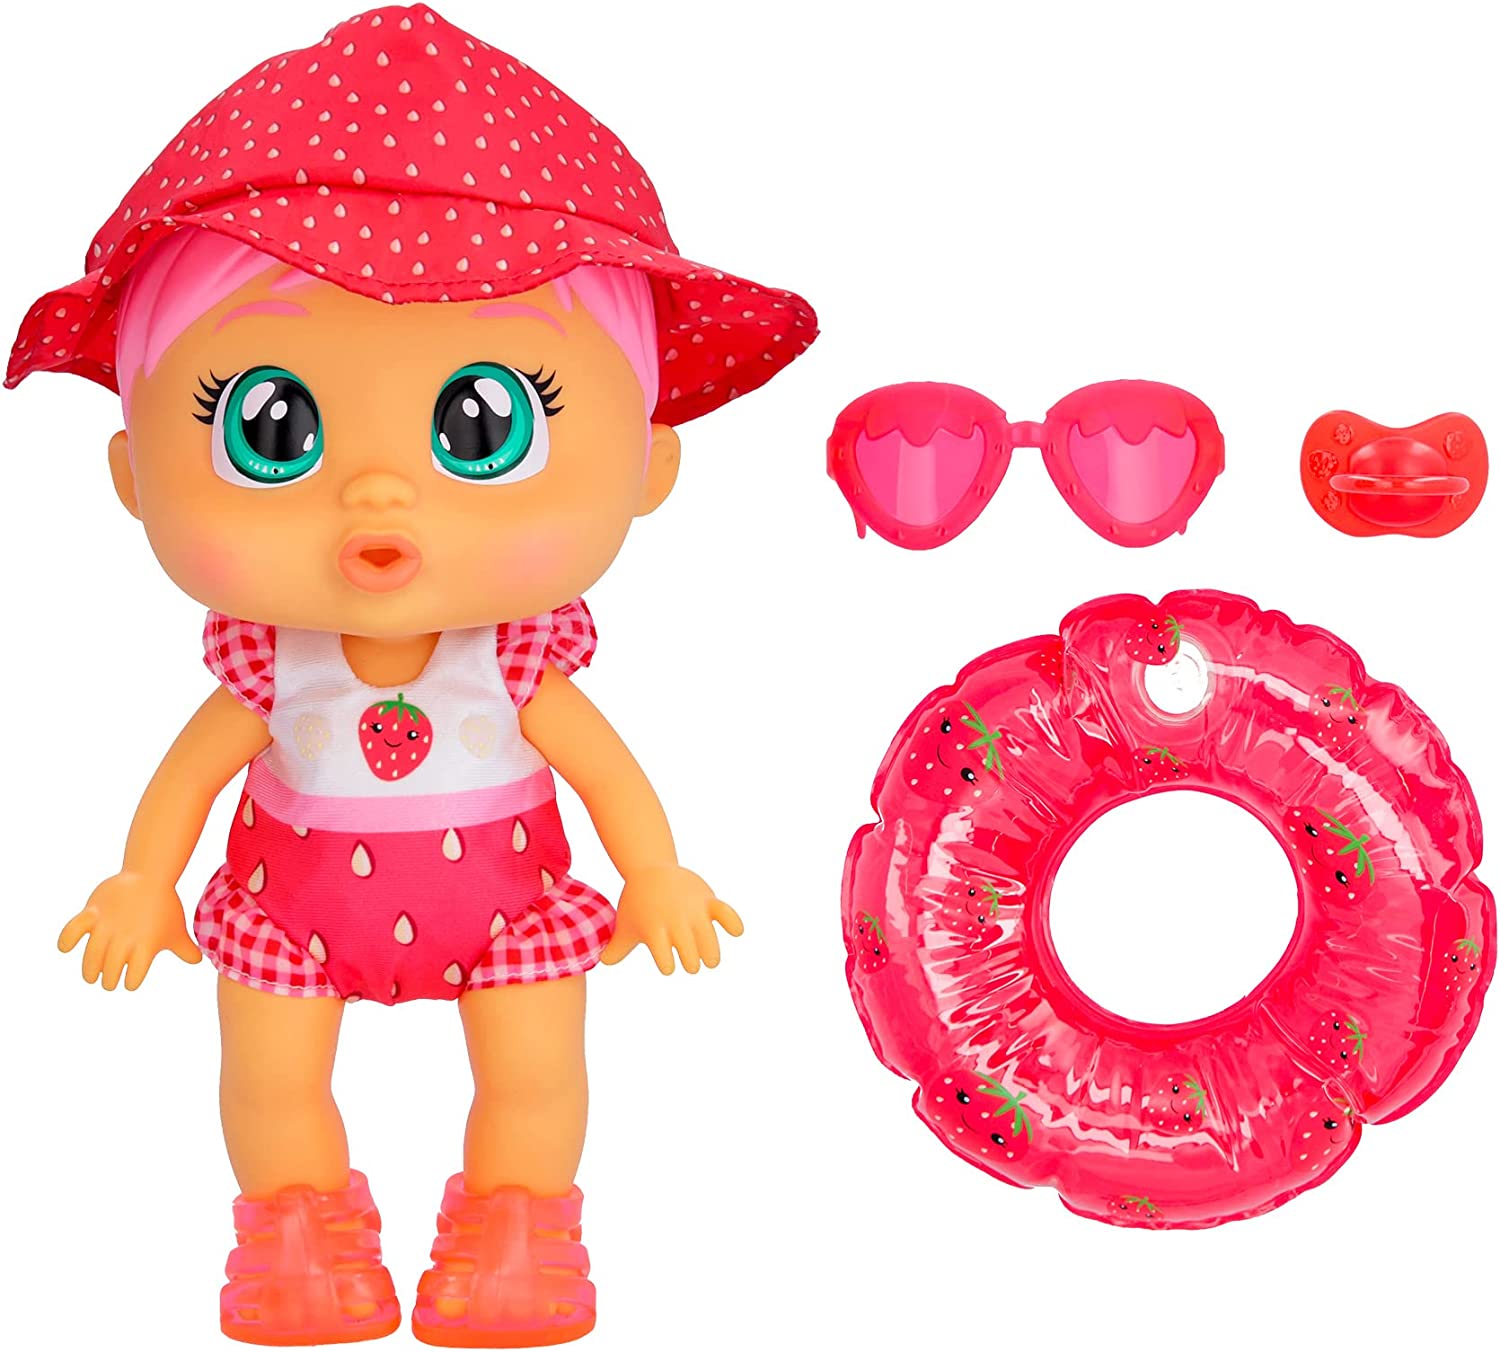 Imc Toys - CRY BABIES Fun N Sun Ella  Bambola Interattiva che Piange  Lacrime Vere ed É Progettata per Giocare Dentro e Fuori D